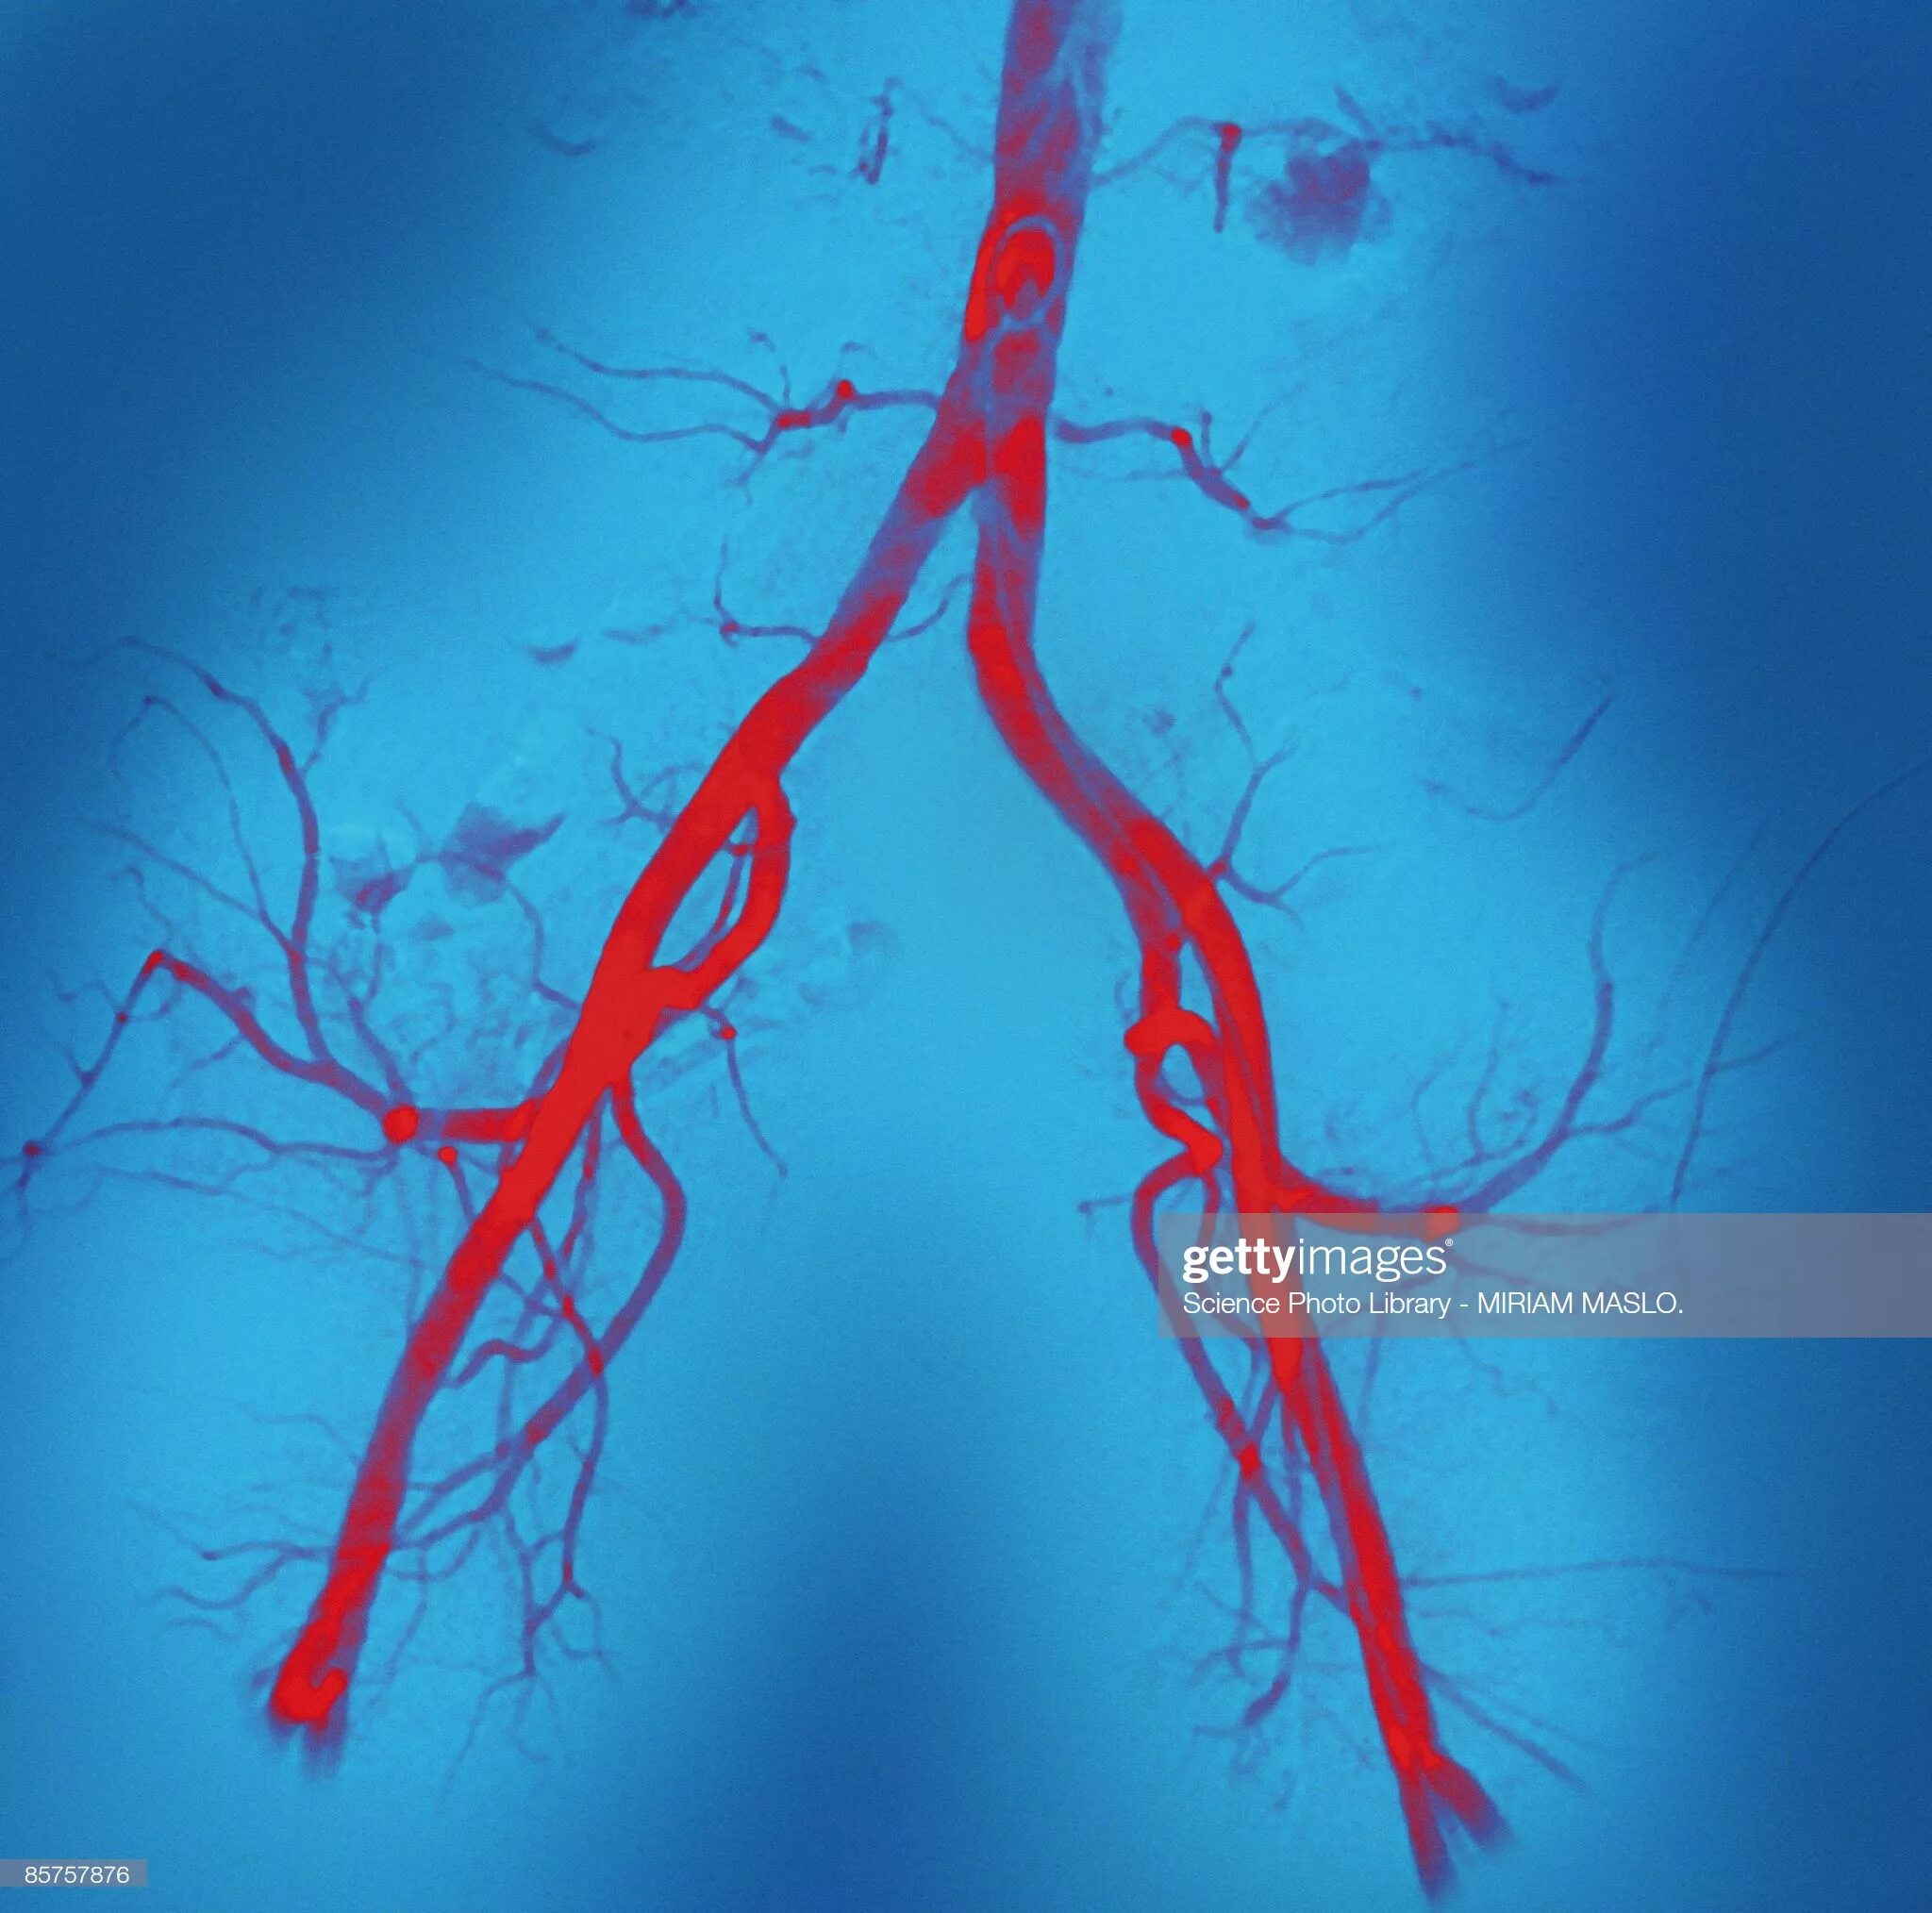 Пронизан кровеносными капиллярами. Ангиография артерий нижних конечностей (АНК). Артерии фон. Кровеносные сосуды в виде дерева.